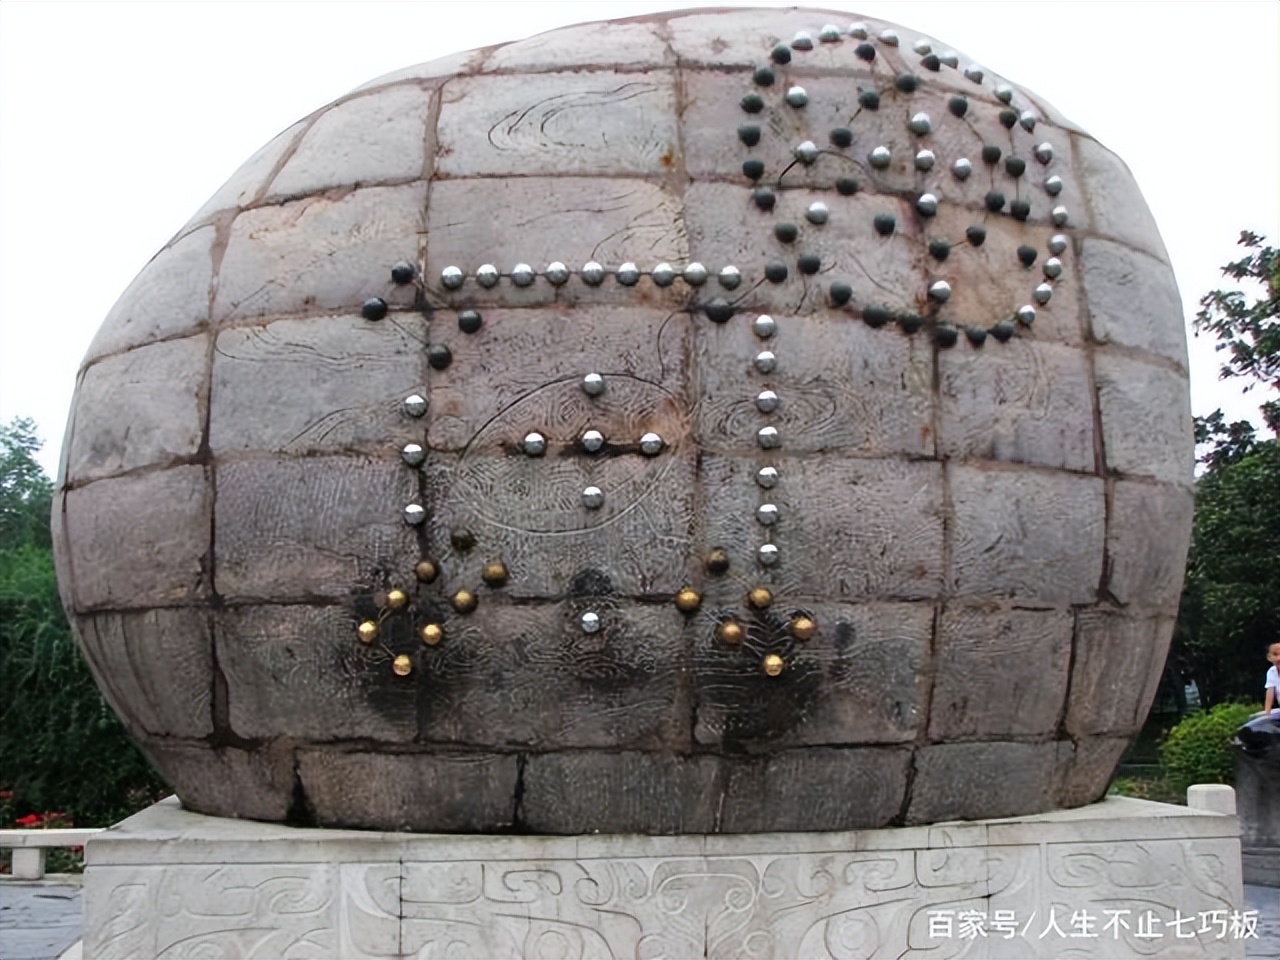 洛阳王城公园，中国第一座遗址公园，内有河图洛书碑大气优雅